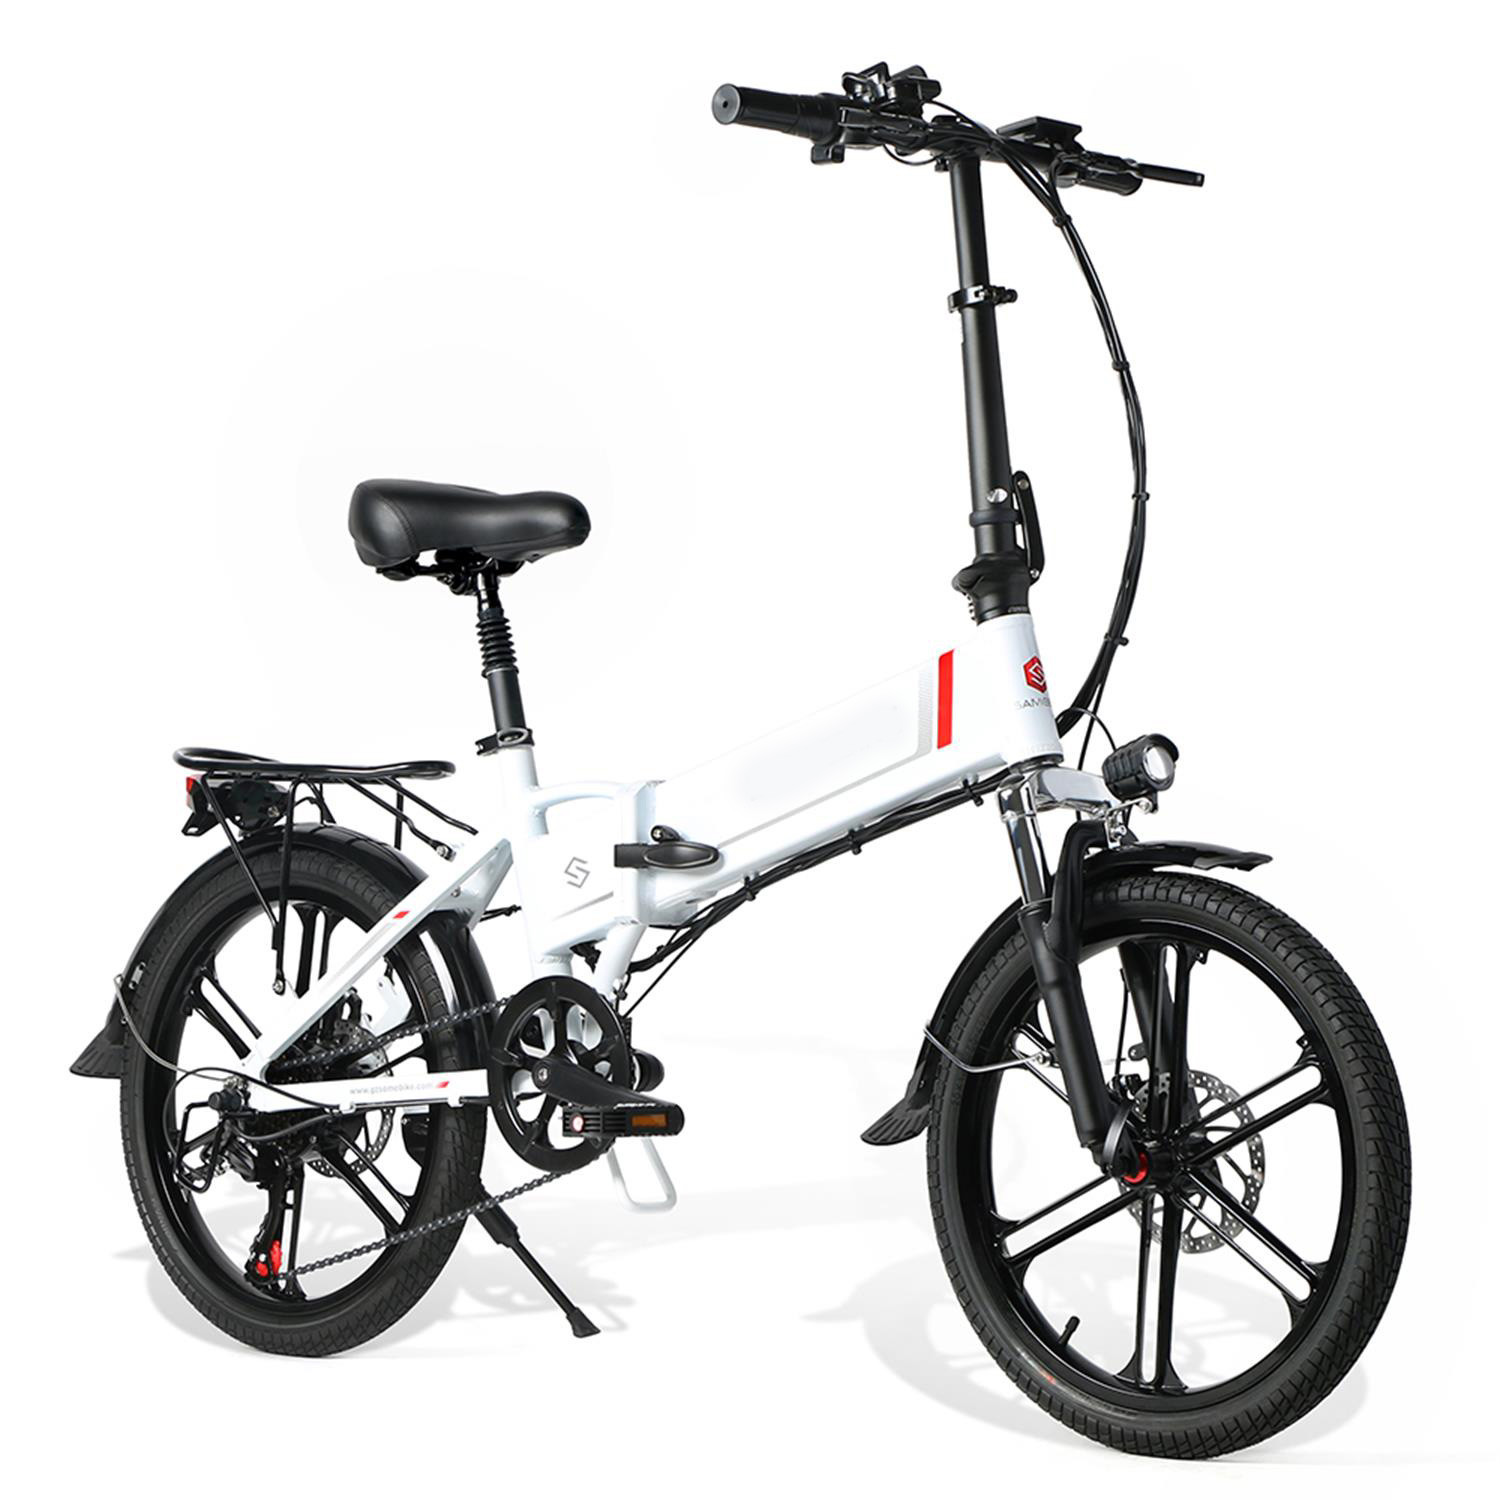 Vélo électrique urbain et compact